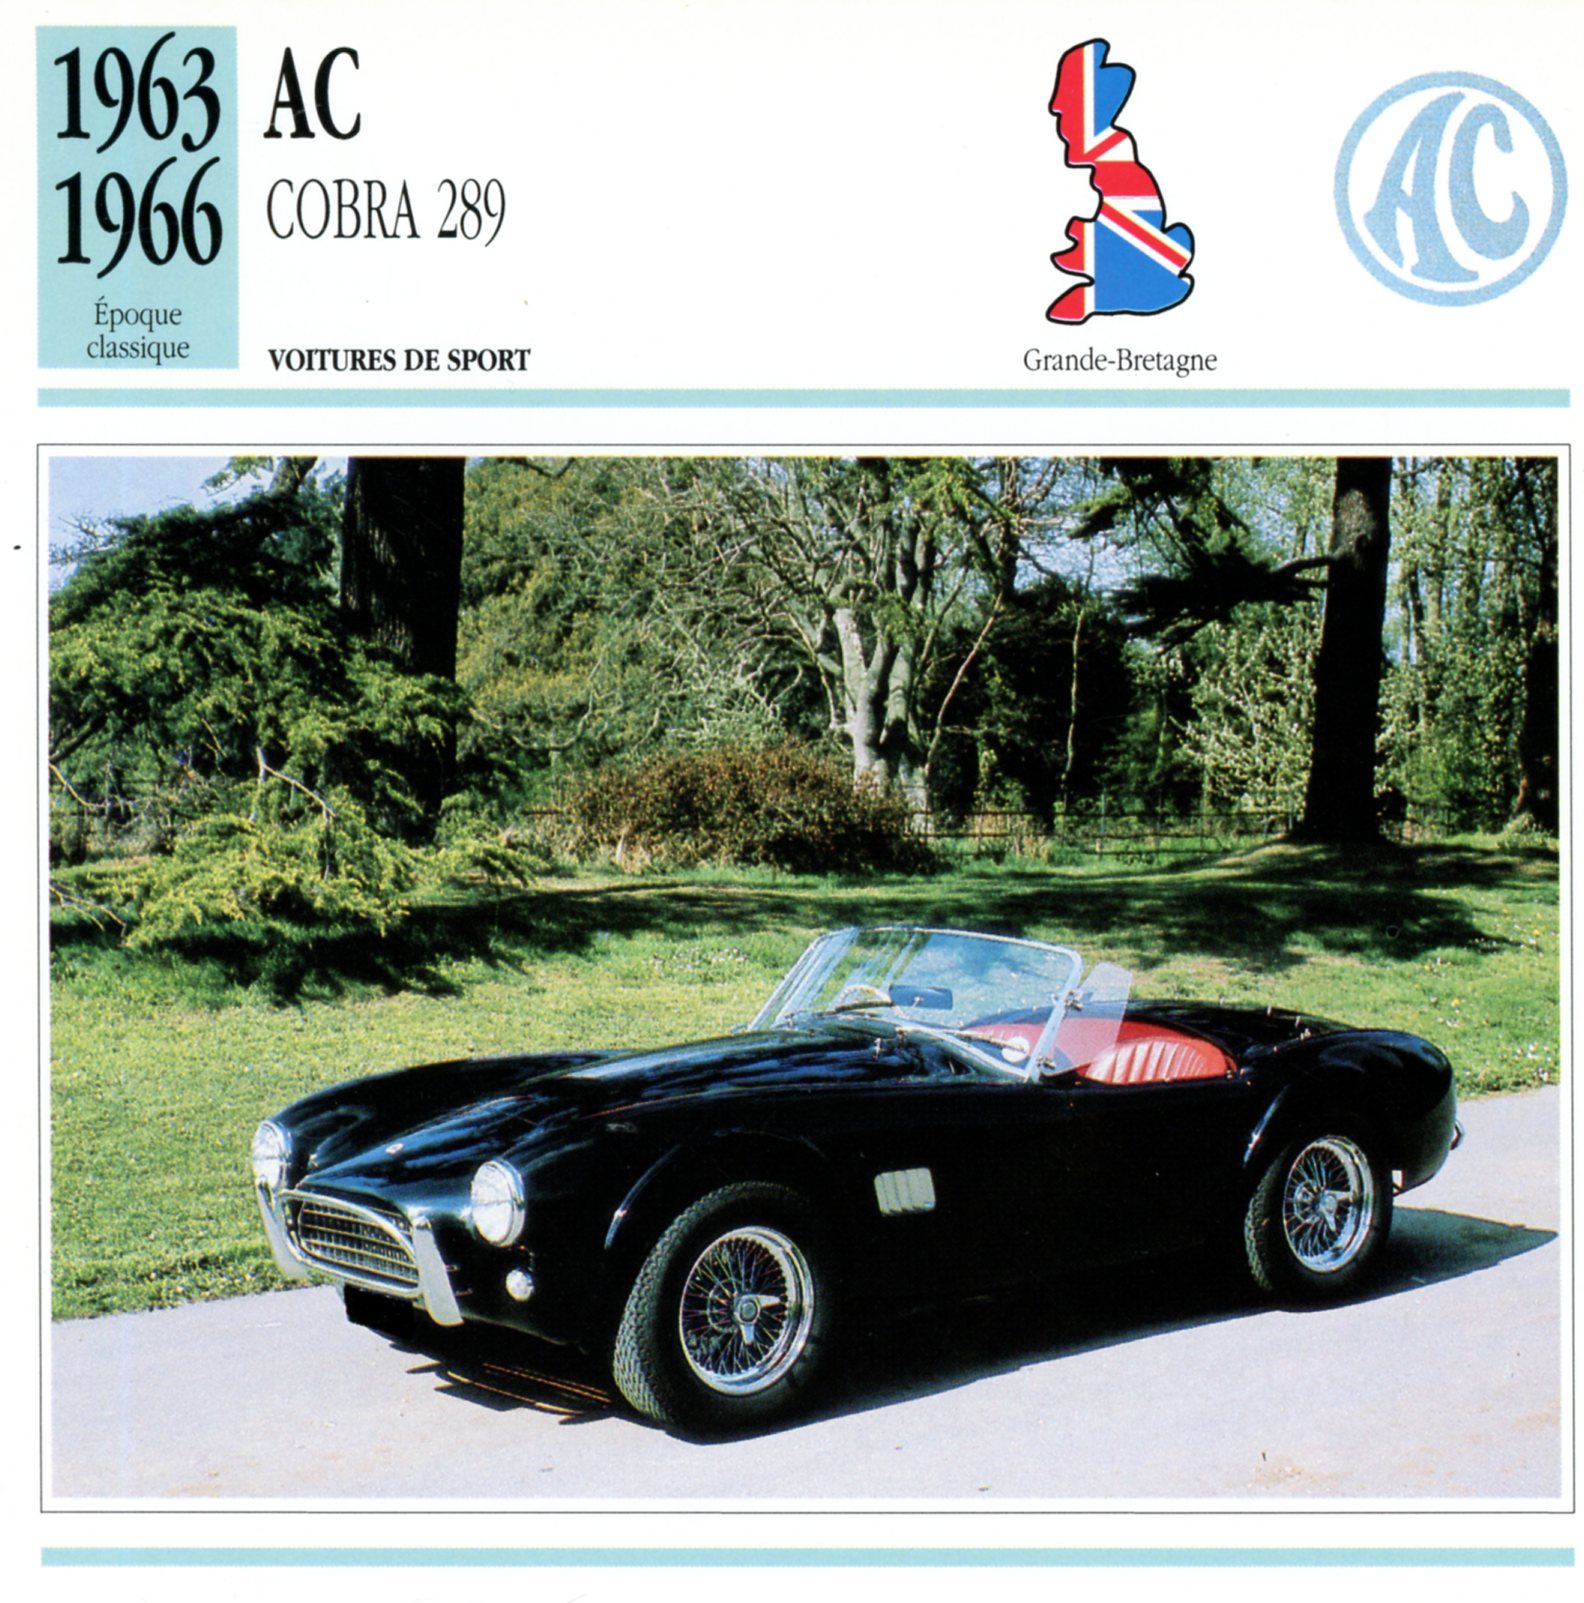 AC COBRA 289 1963 1966 - FICHE AUTO CARACTÉRISTIQUES